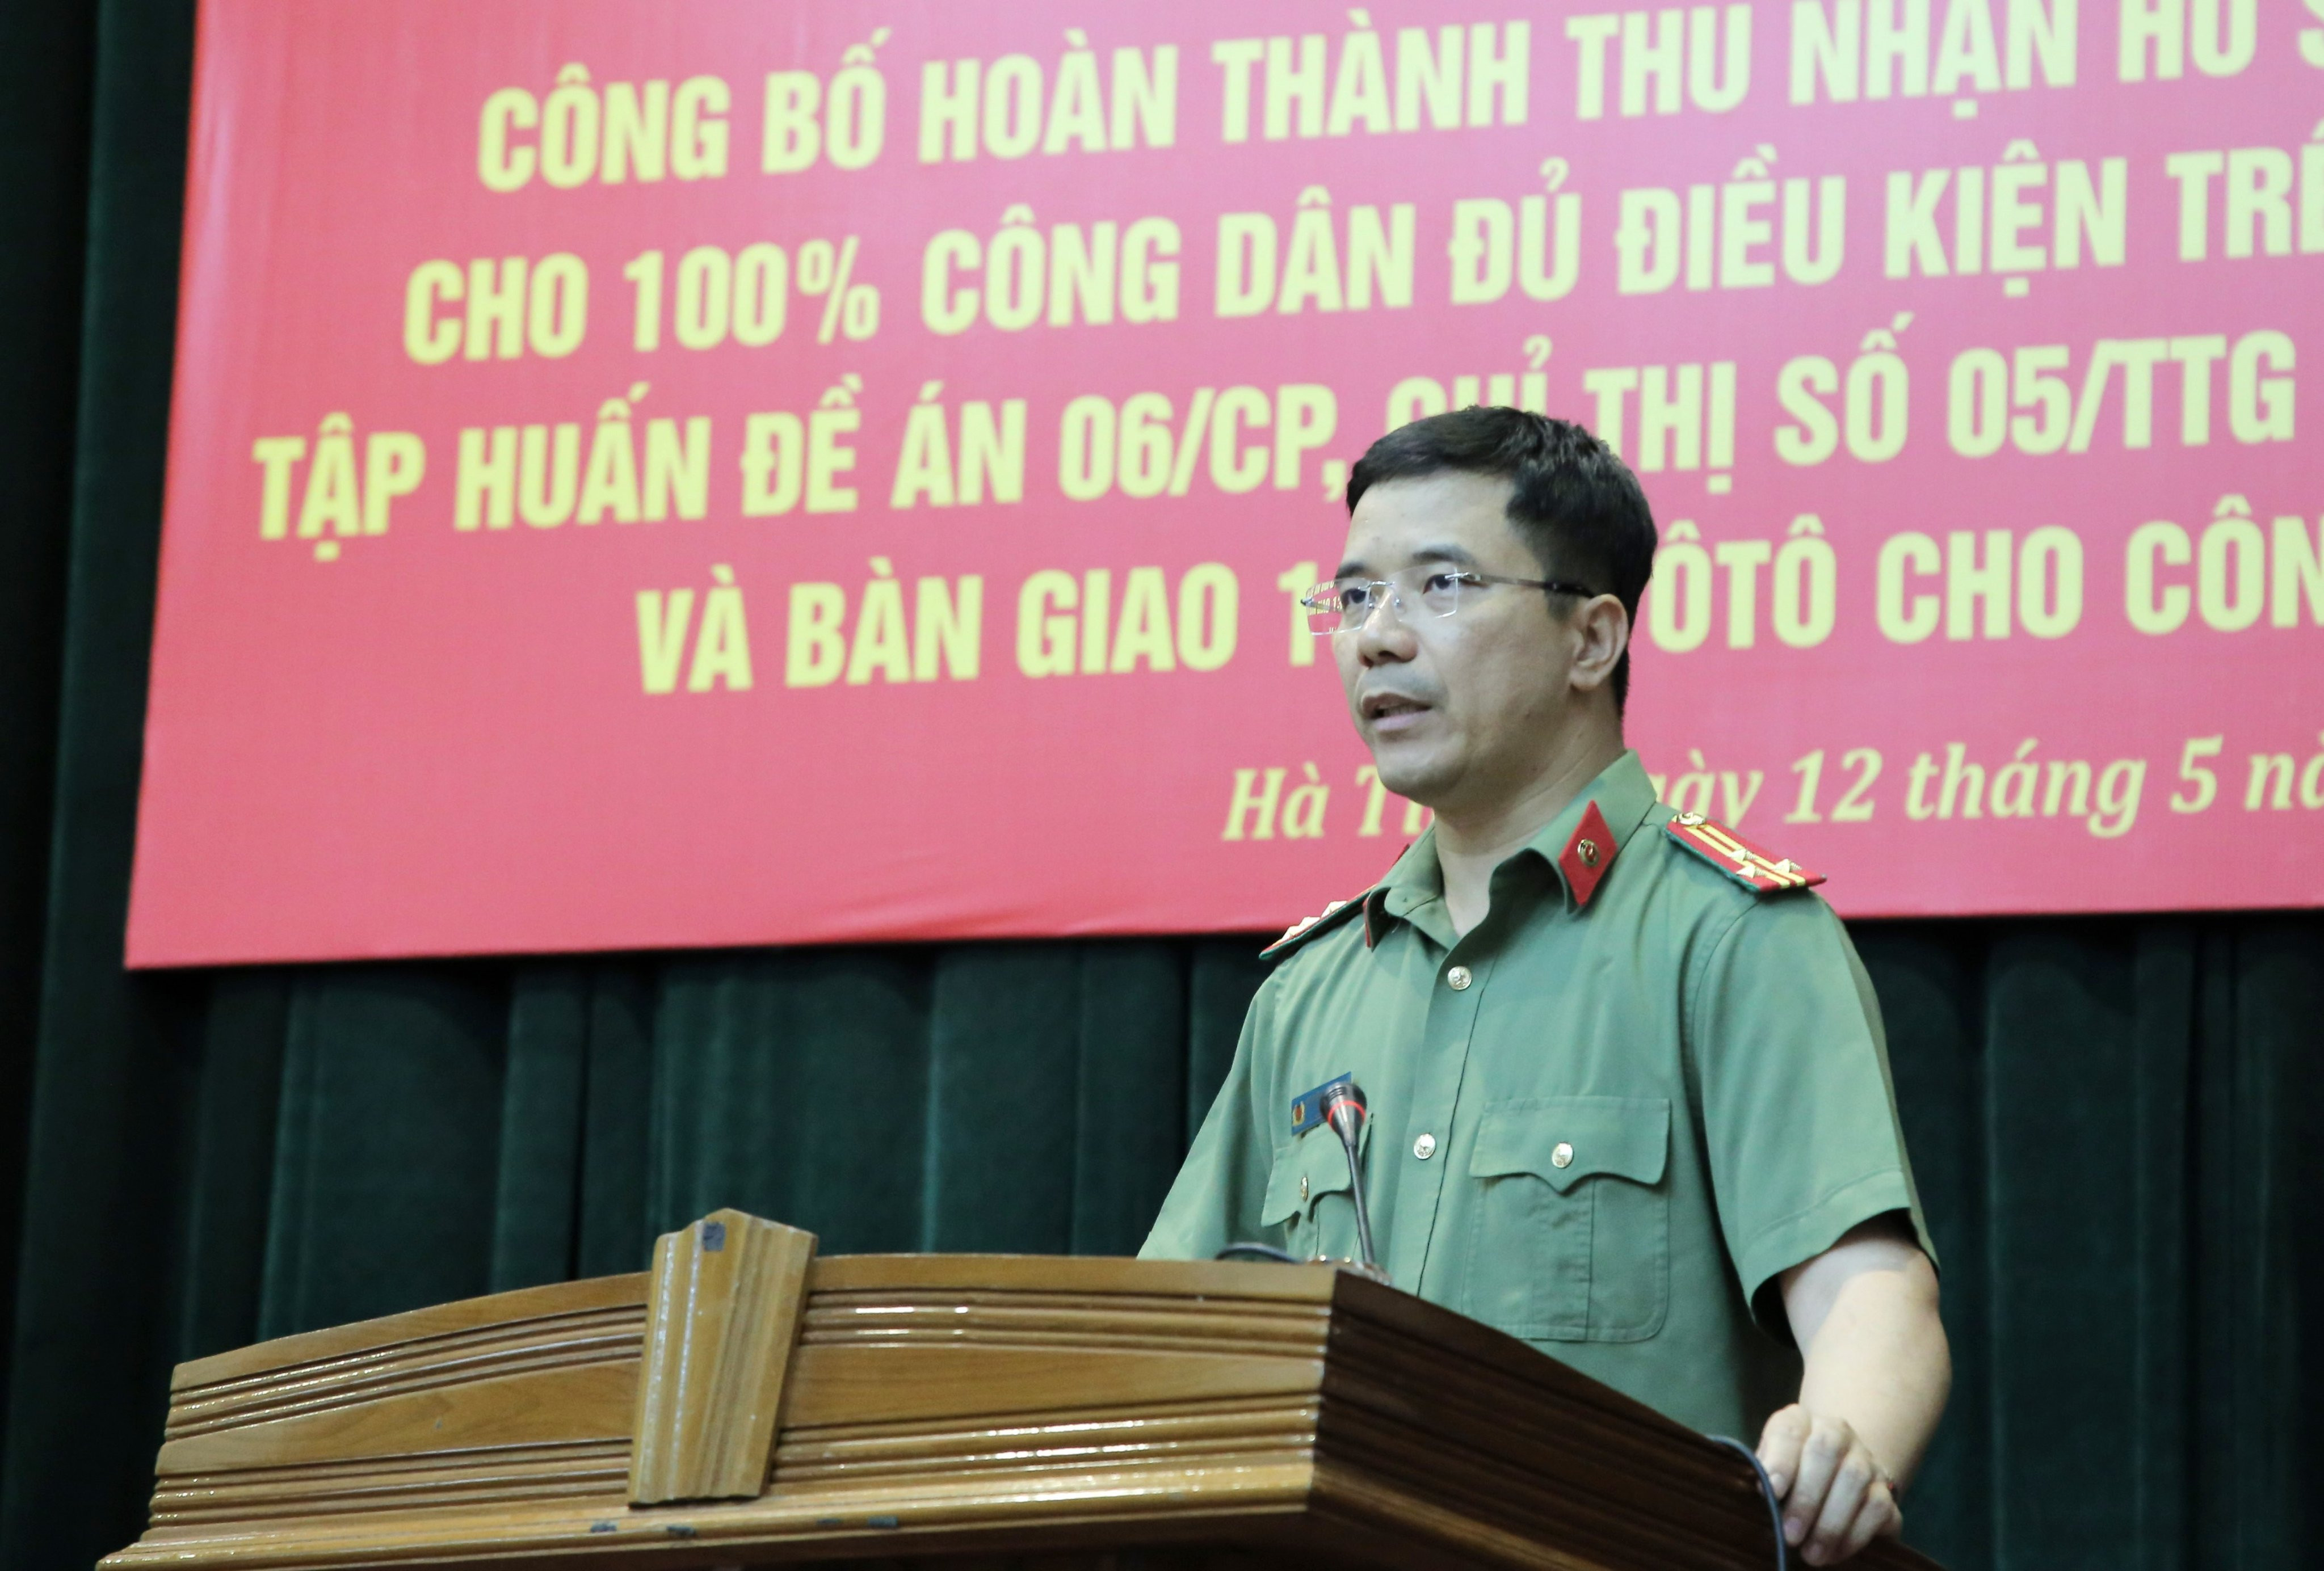 Hà Tĩnh hoàn thành việc cấp hơn 1 triệu CCCD gắn chíp cho công dân